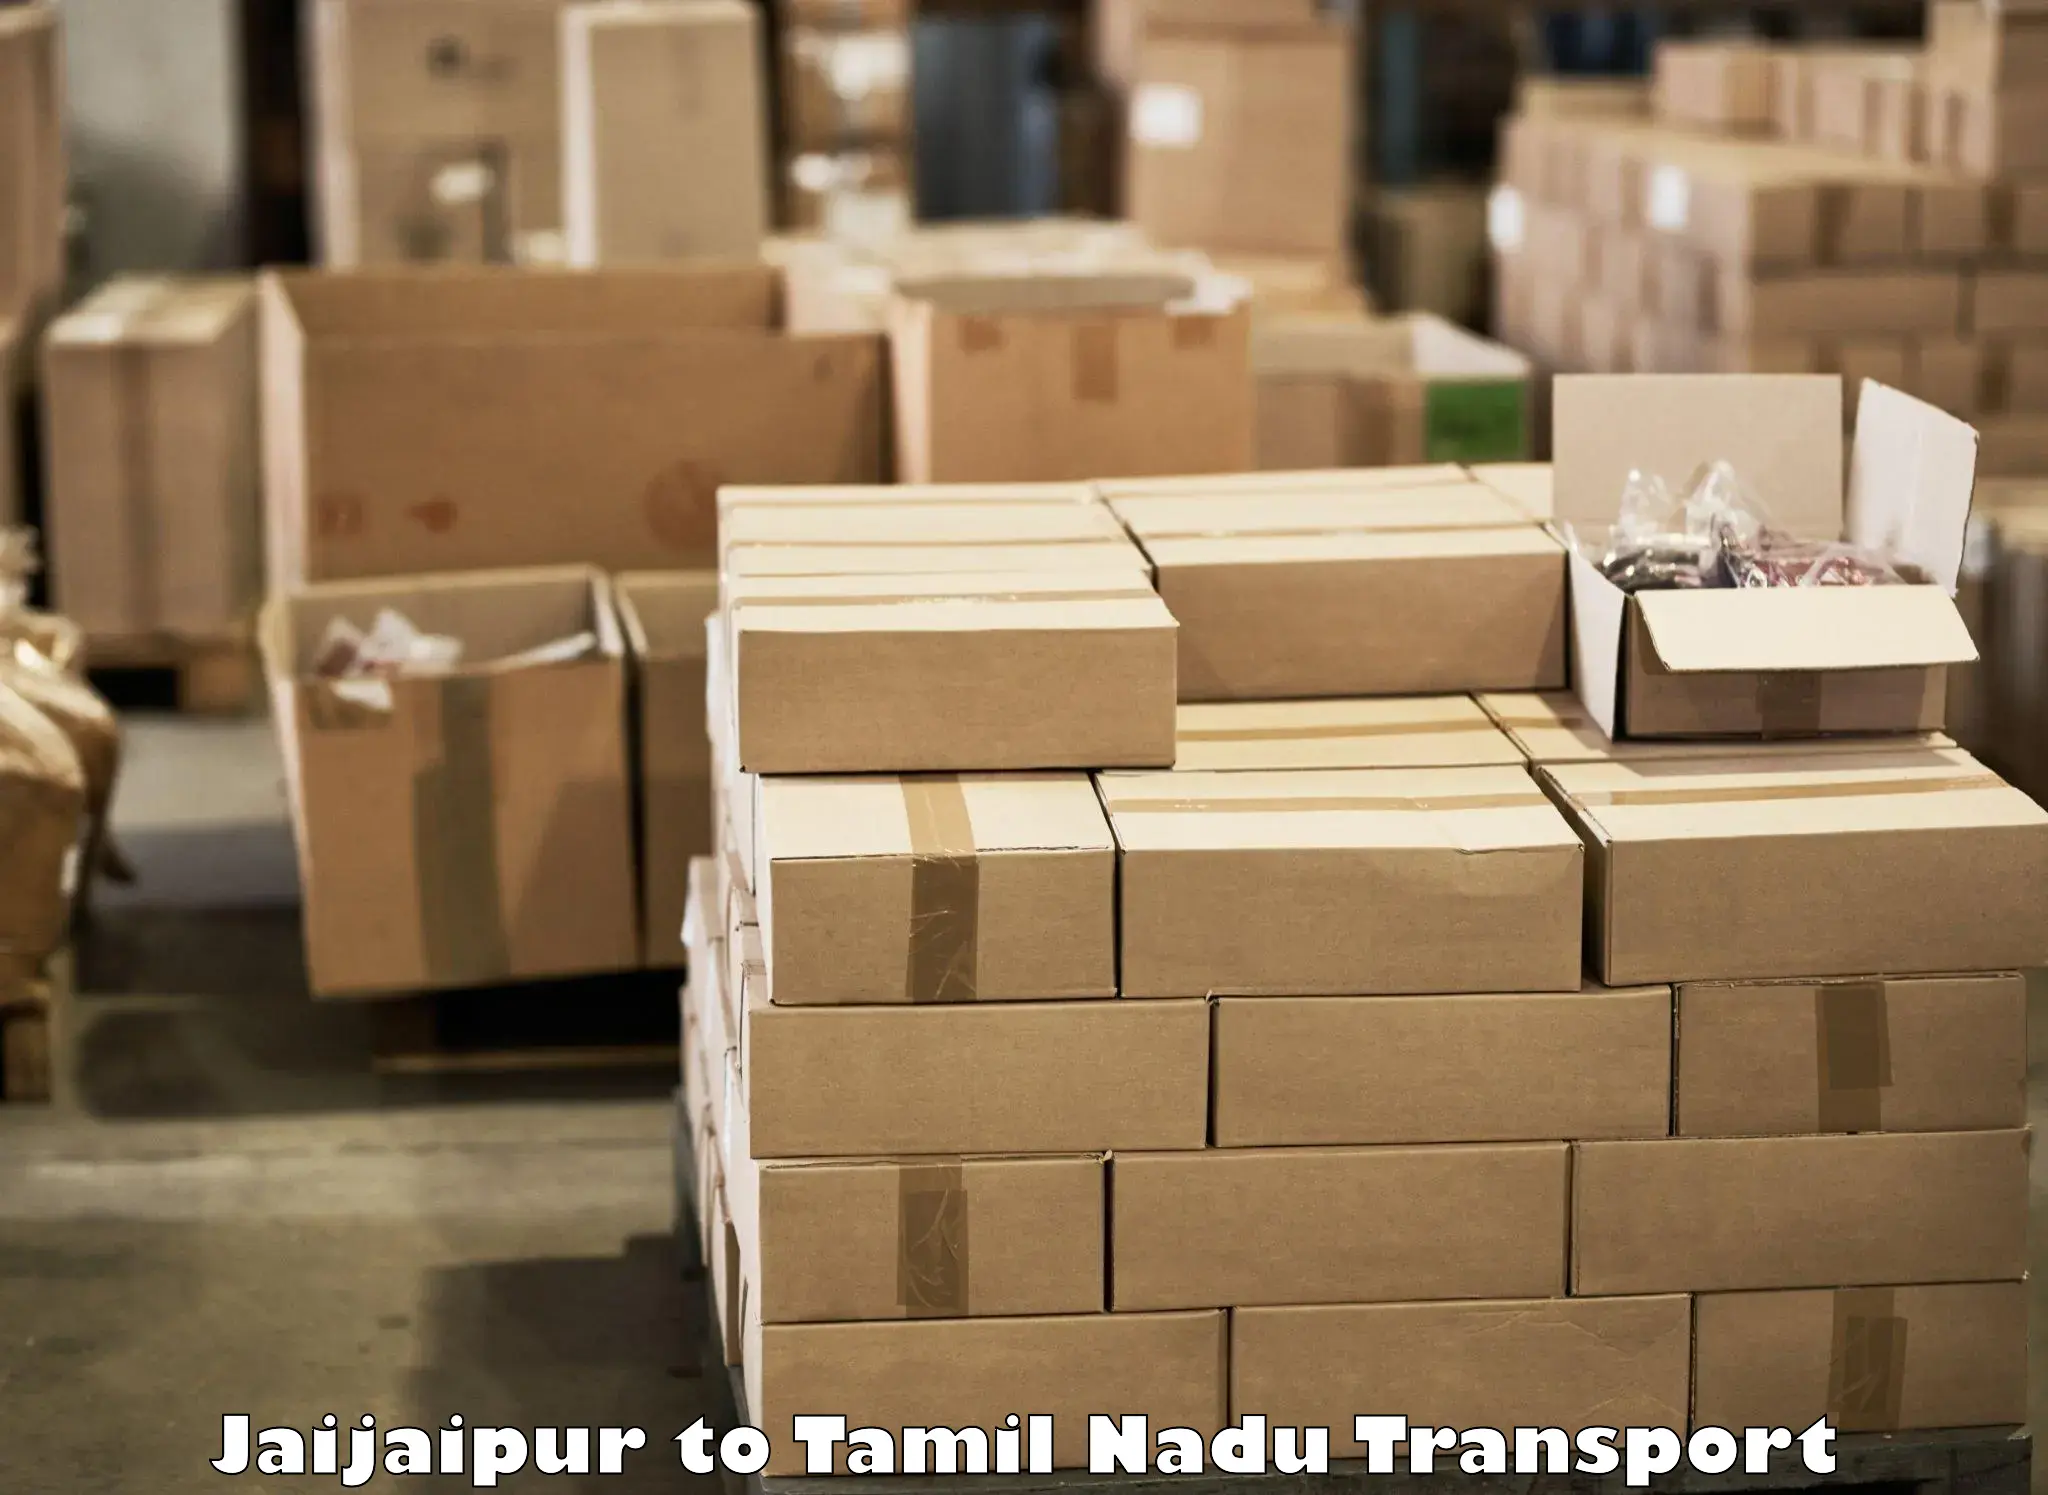 Online transport booking Jaijaipur to Nandambakkam